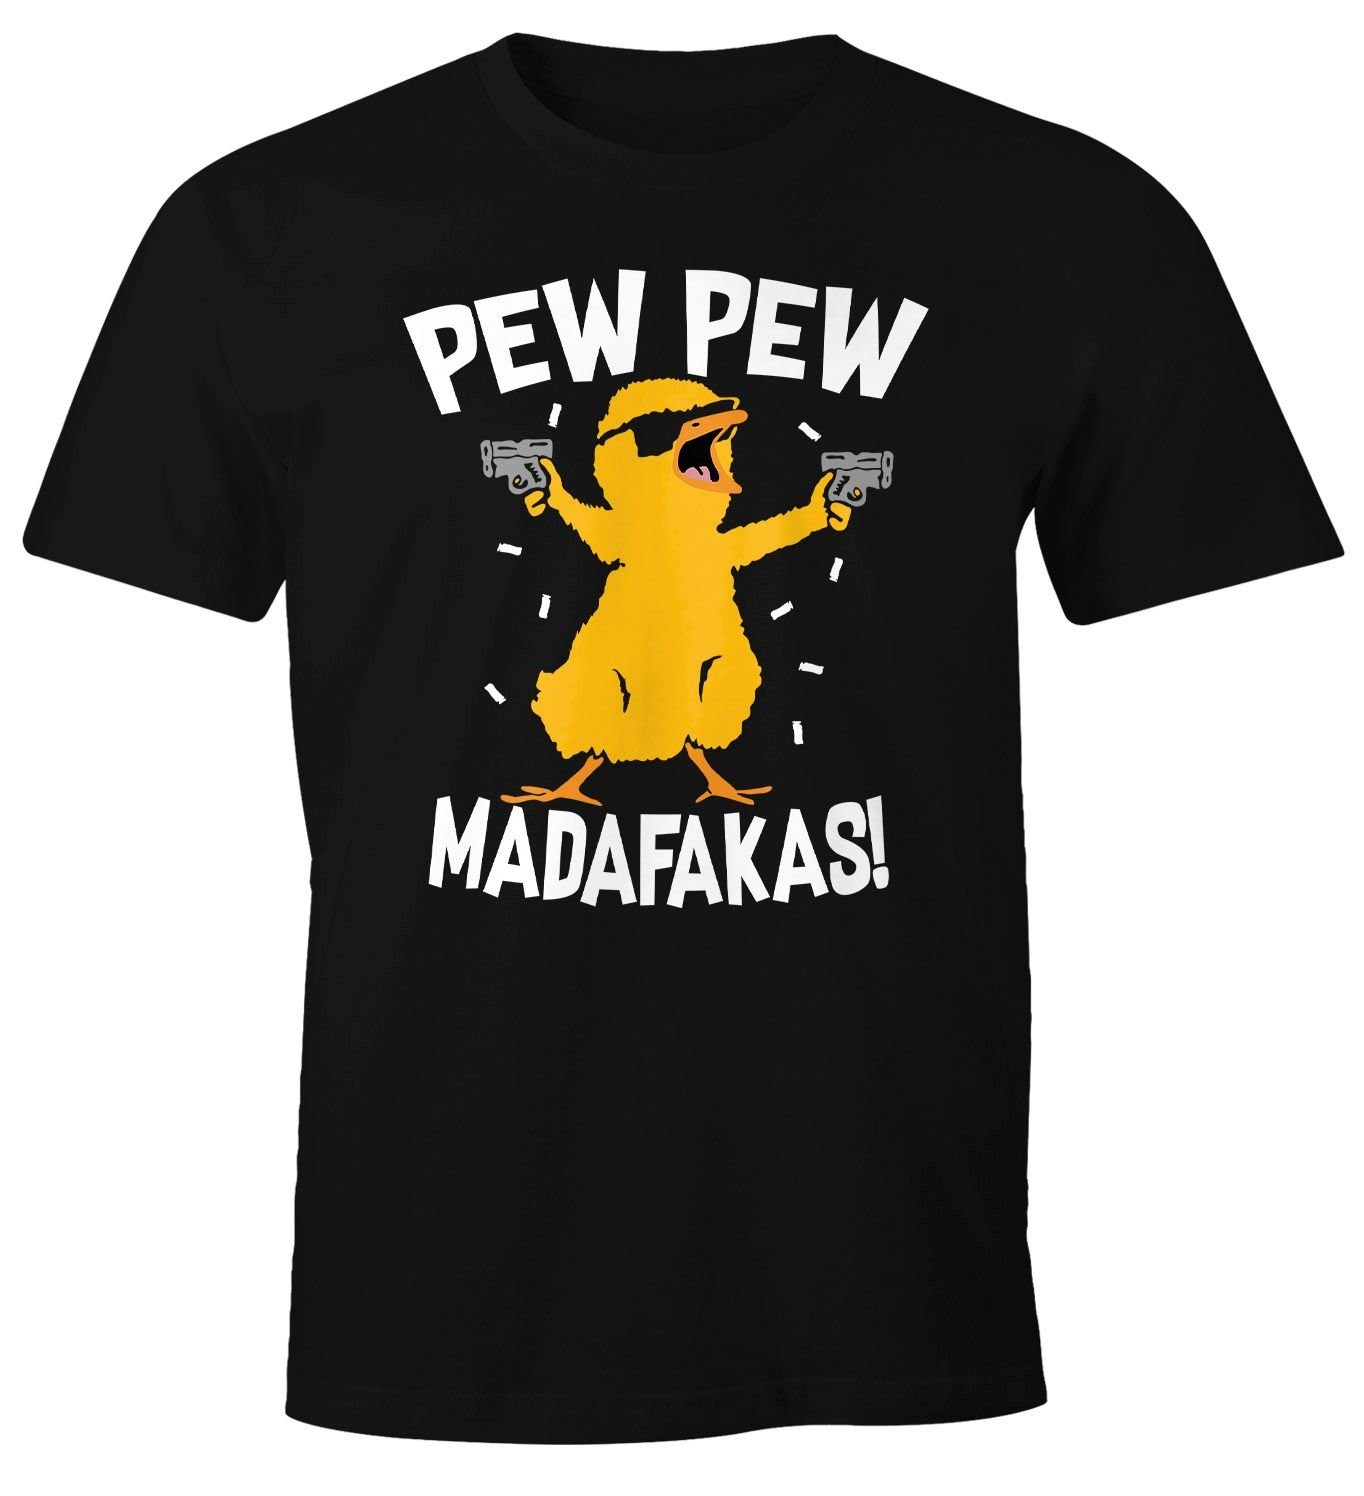 Fun-Shirt T-Shirt Crazy Spruch schwarz mit Pew Chick Madafakas Print-Shirt Moonworks® Küken MoonWorks Herren Meme Trend Pew Print